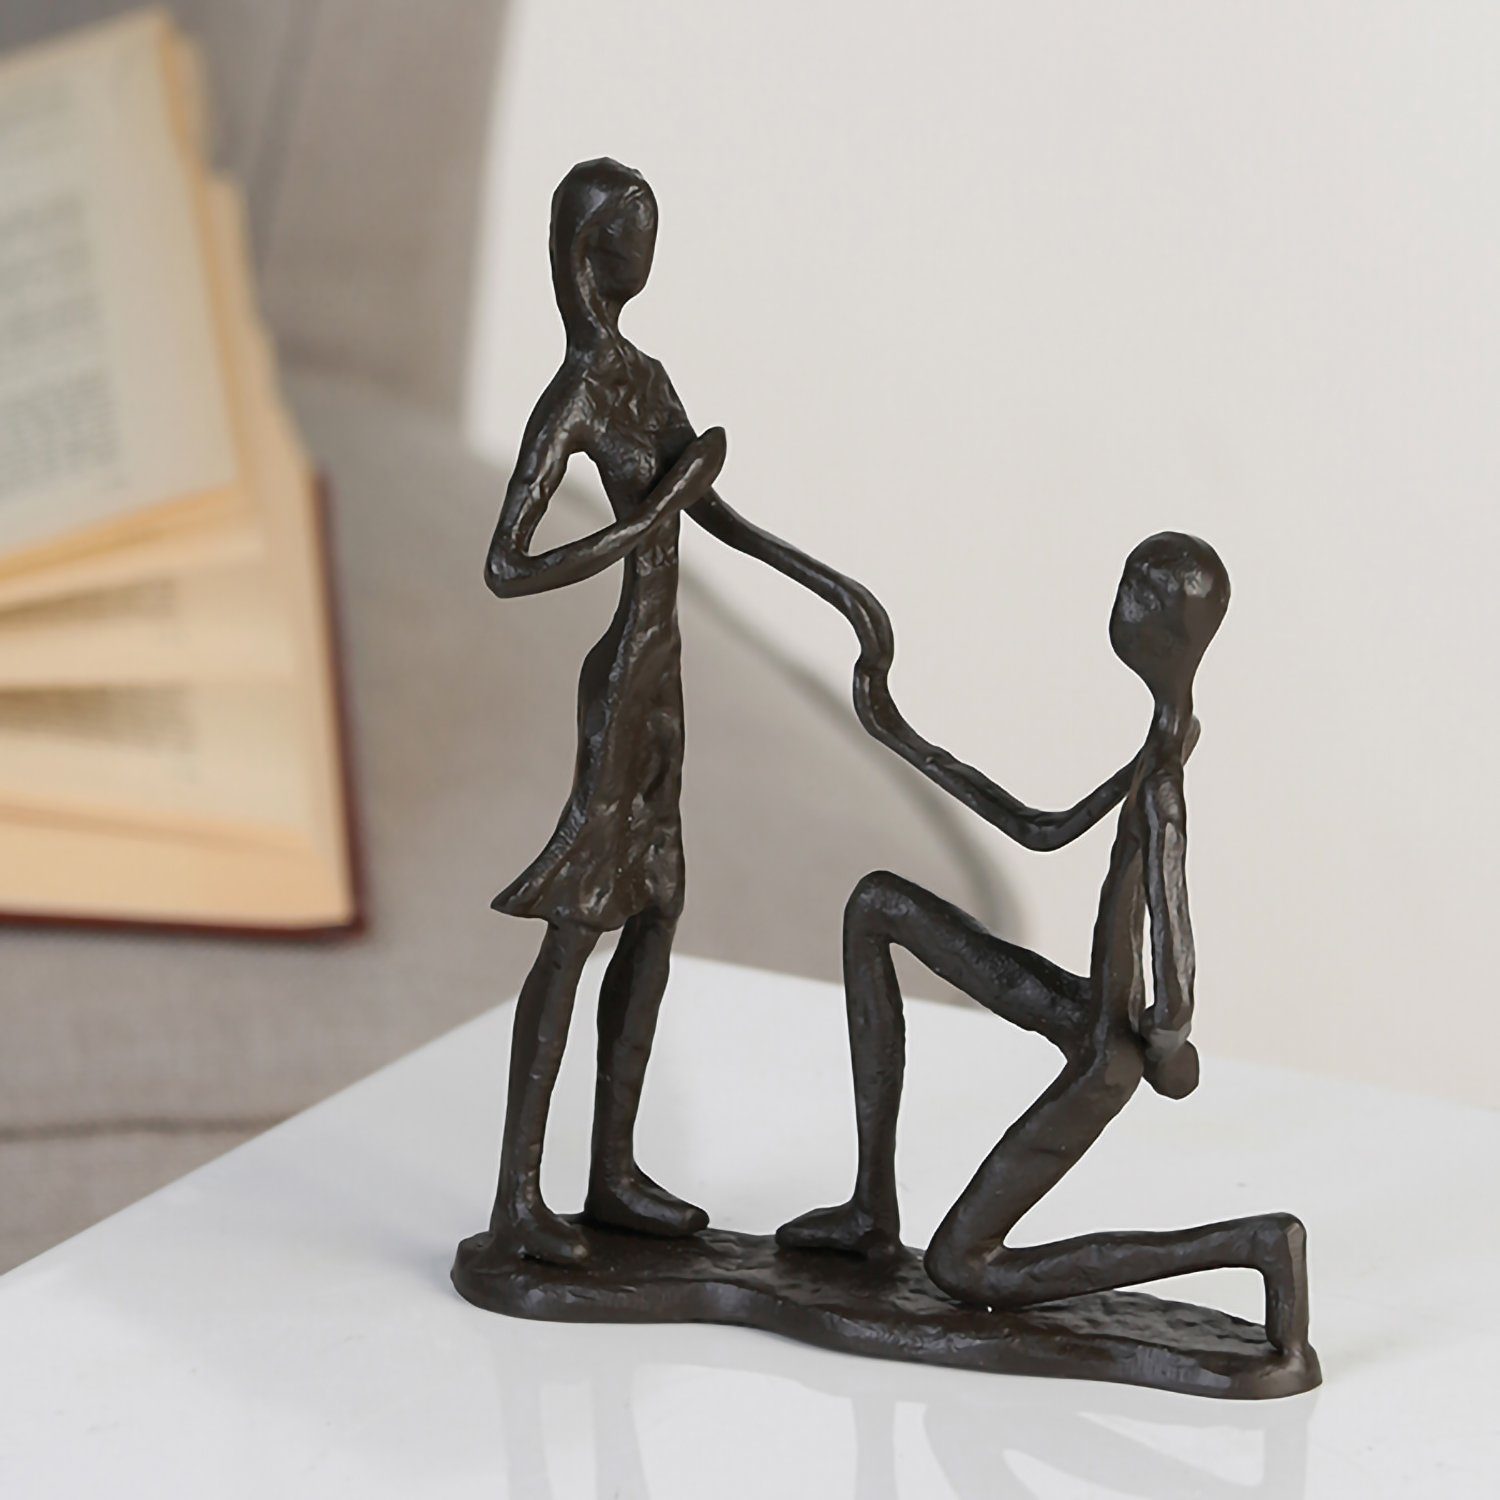 B. Marry Dekofigur 17cm braun x - GILDE - H. GILDE Skulptur Me 13cm